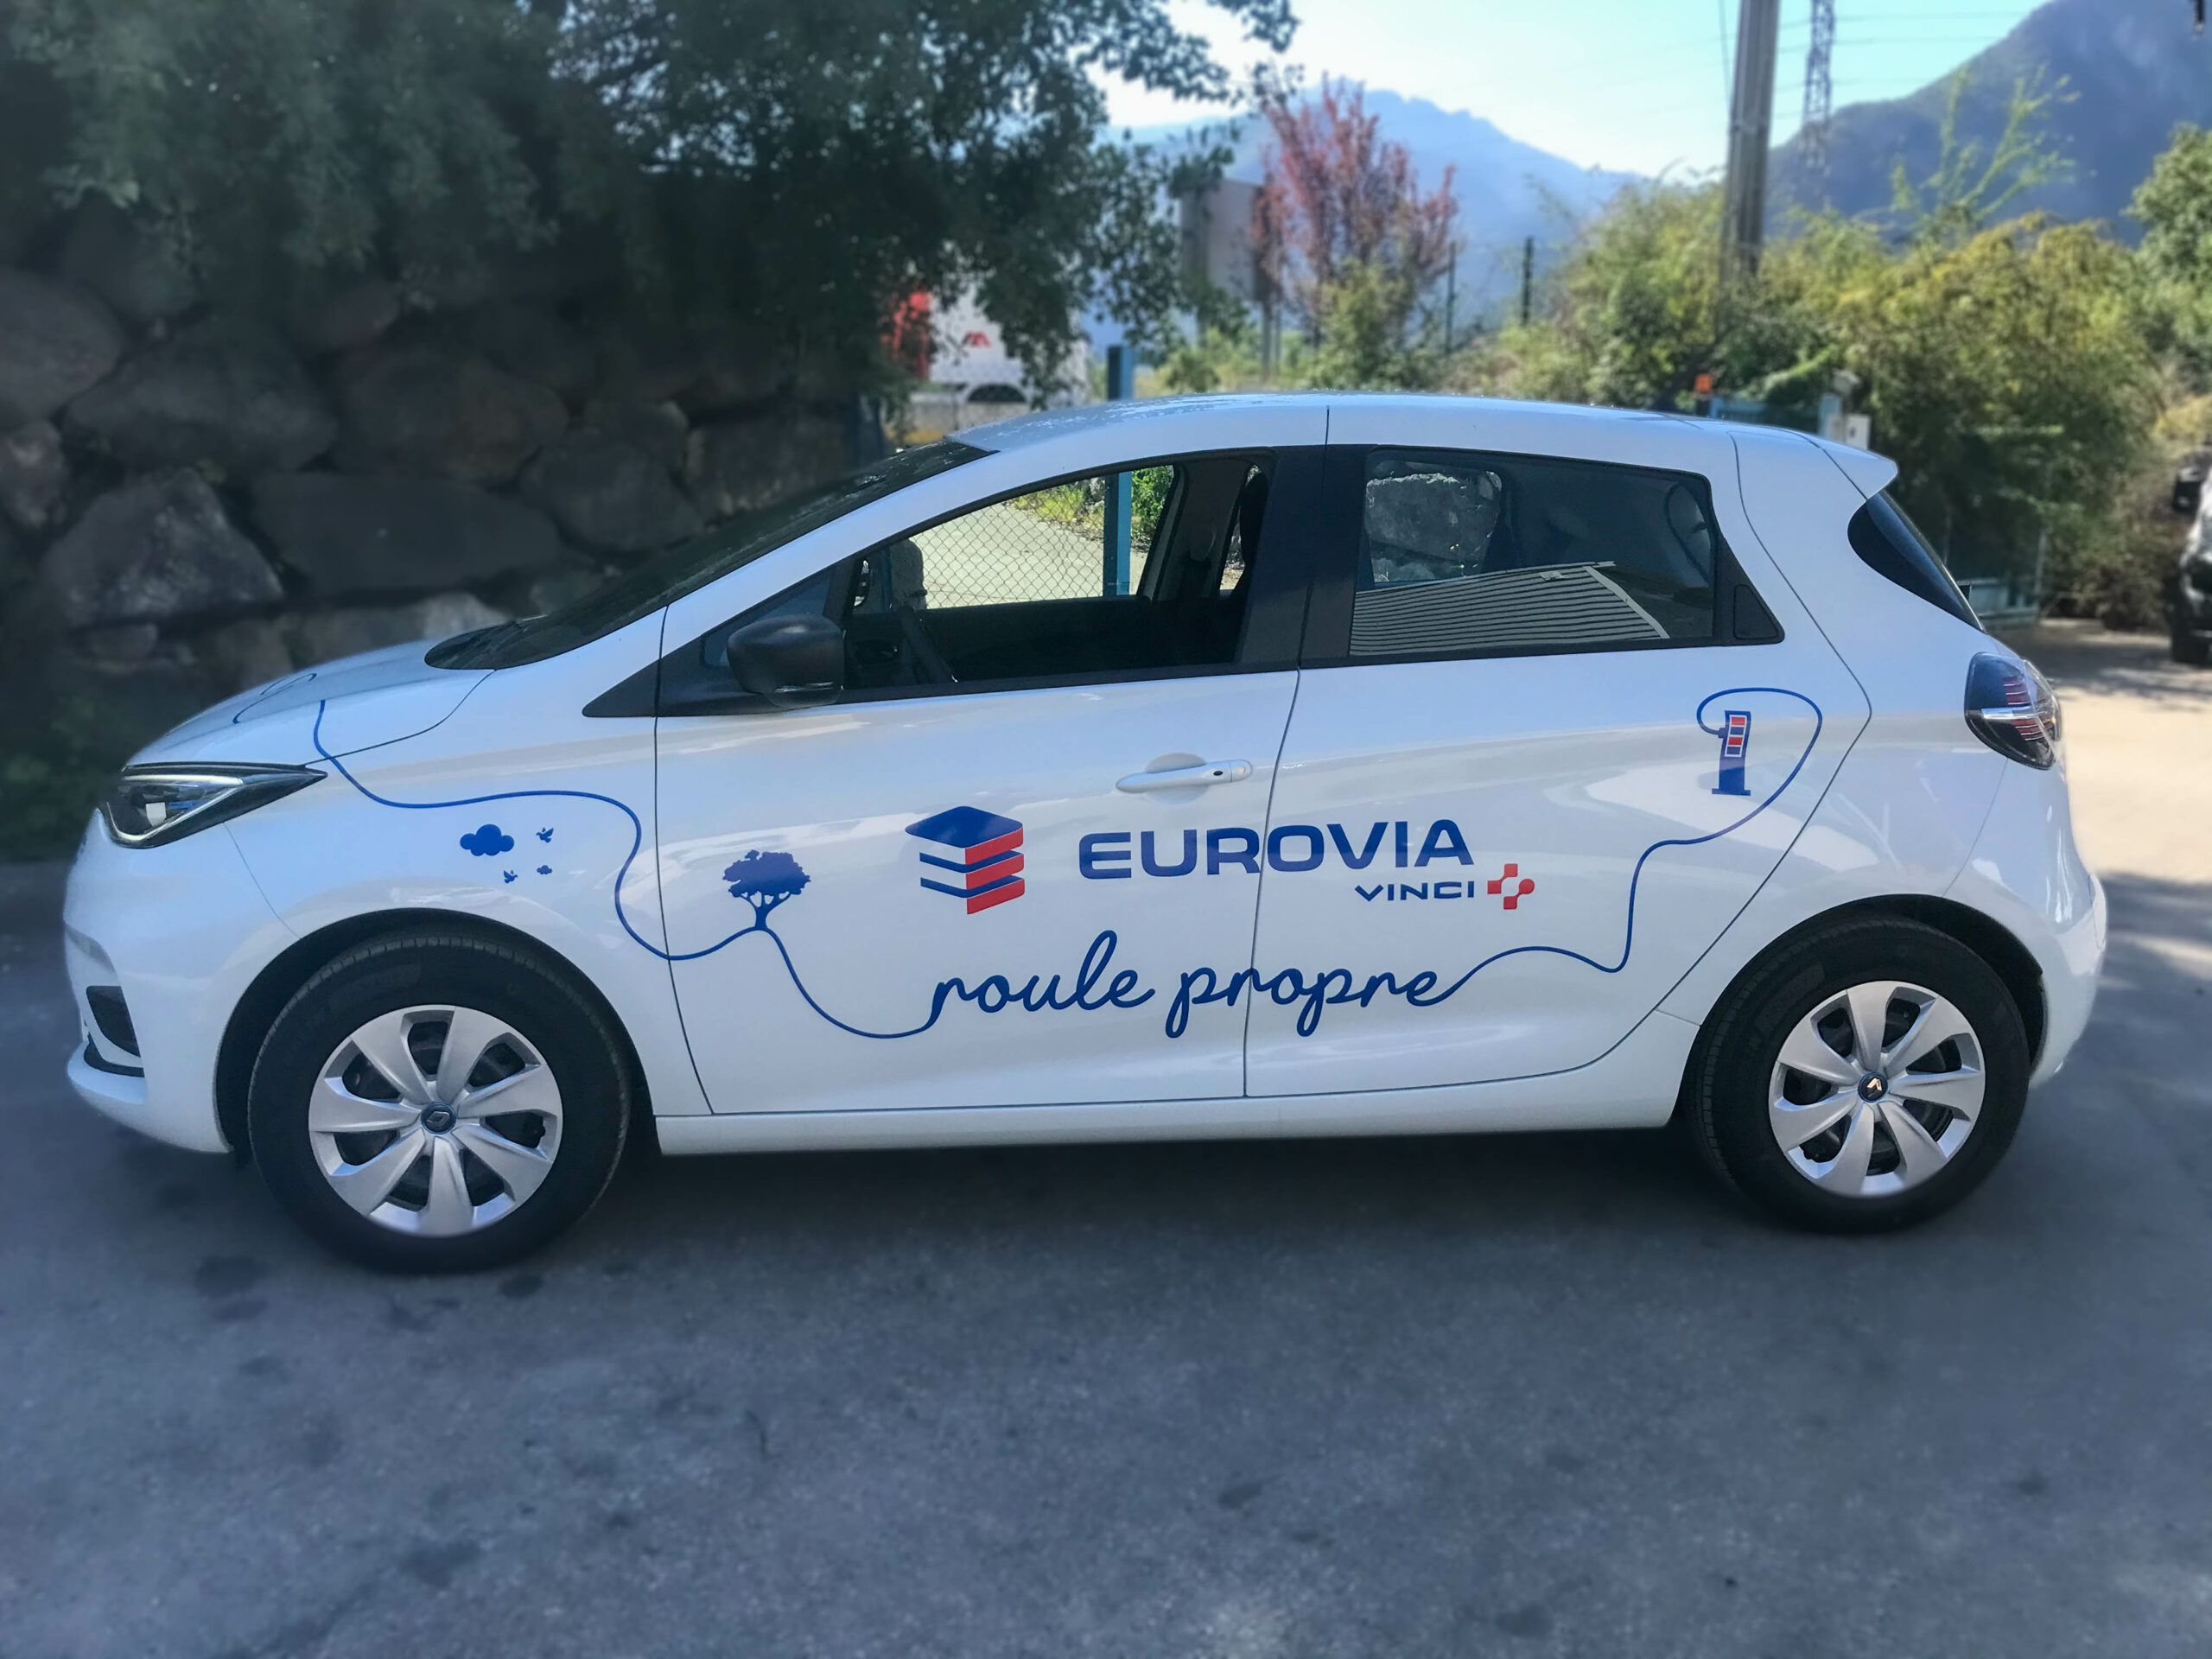 Publicité sur véhicule - Eurovia